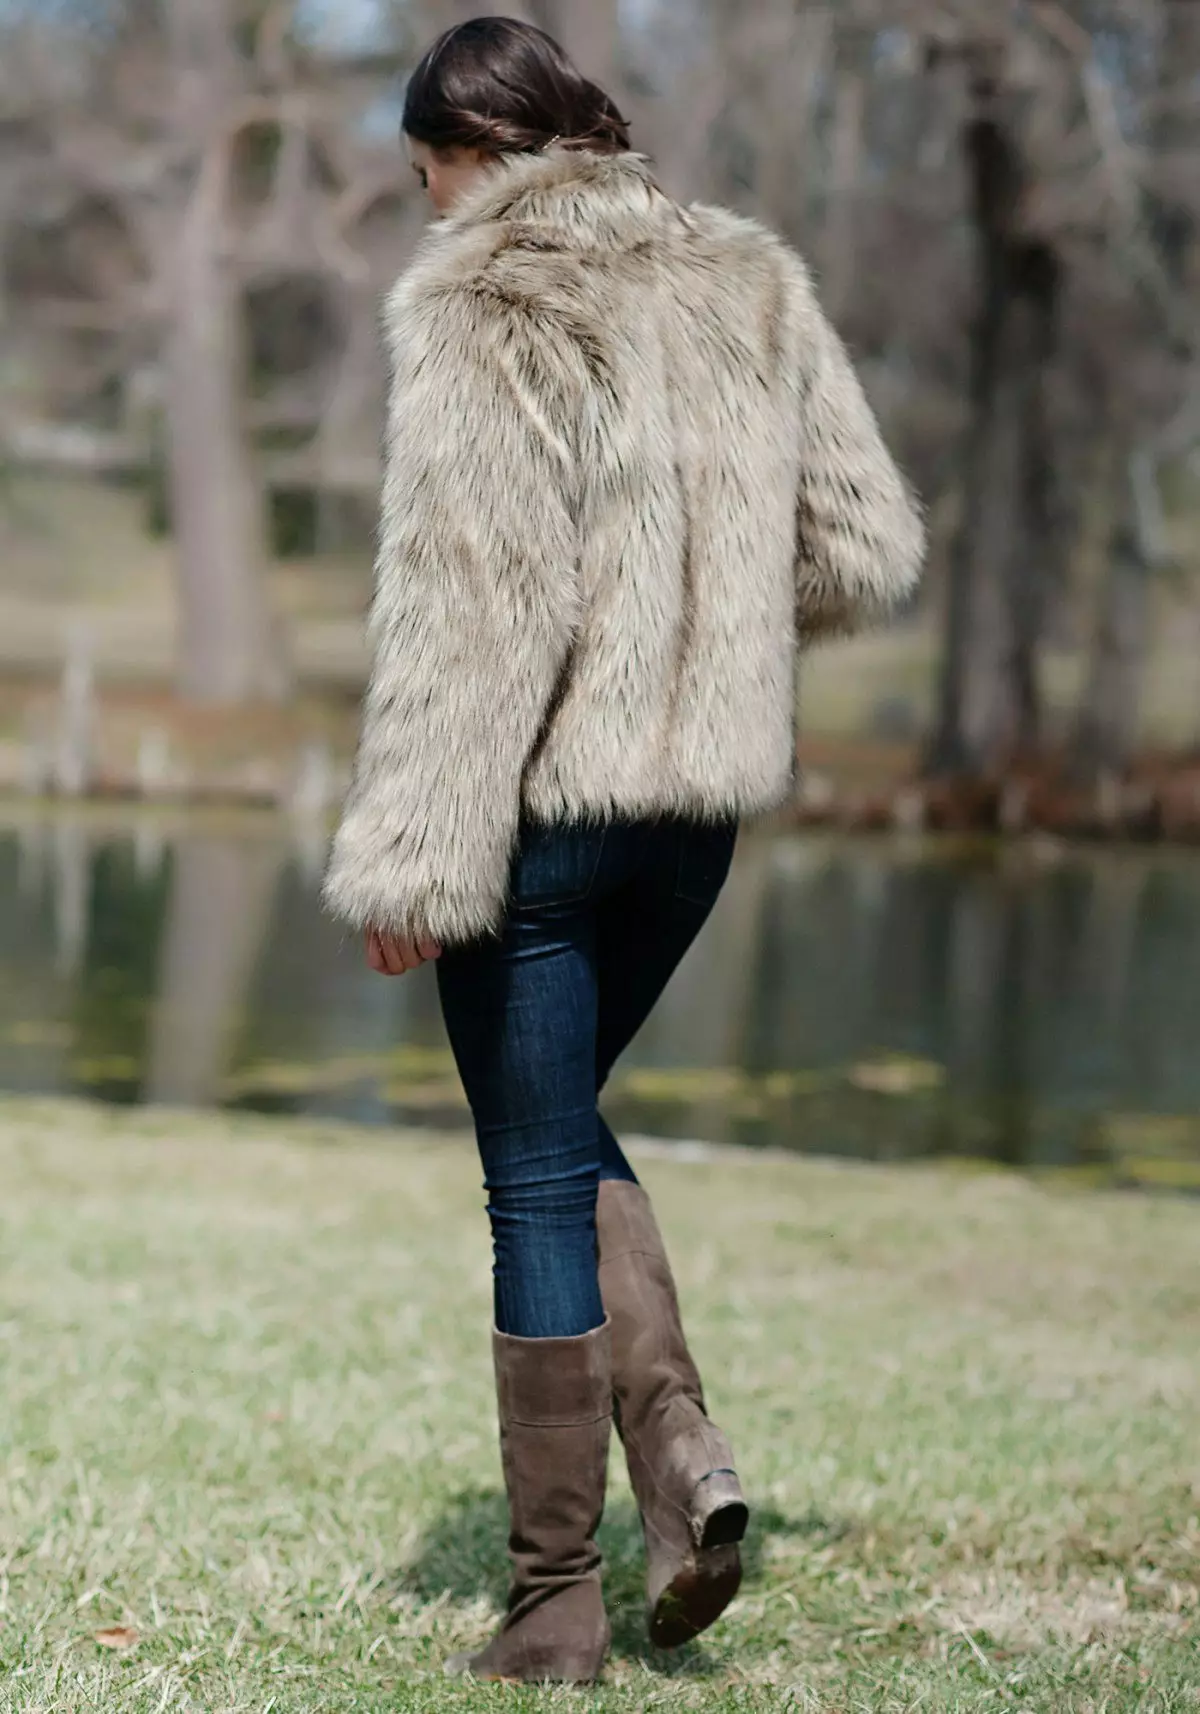 Wolf Fur Coat (60 foto's): Vroue se bontjas, van 'n steppe wolfbont, van rooi, swart, hoeveel koste, resensies 728_24